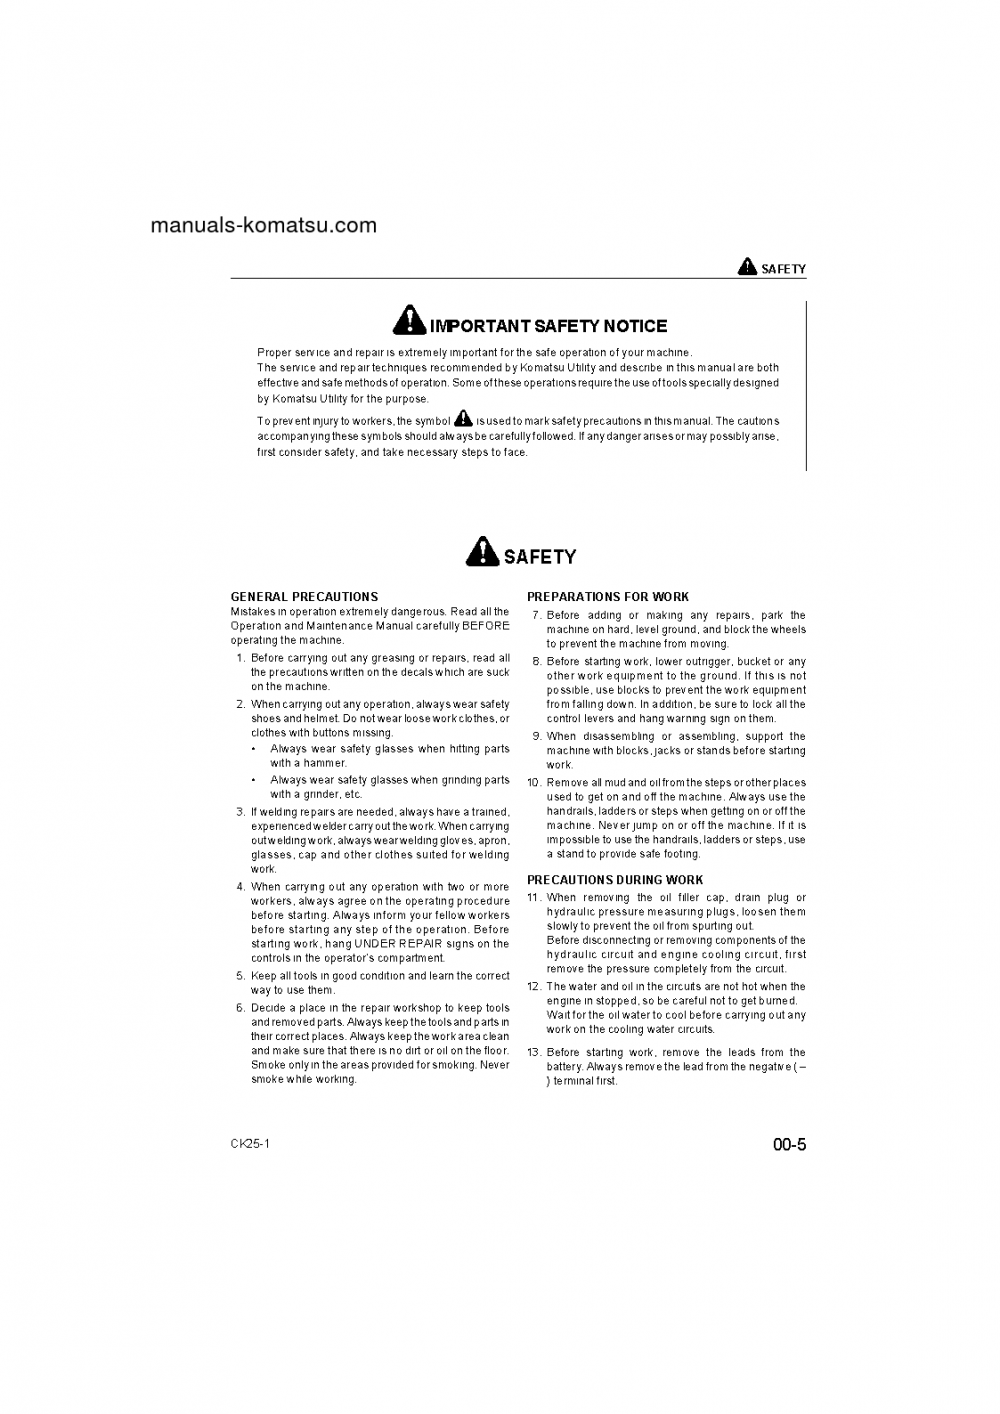 Protected: CK25-1(ITA) S/N F00003- Shop (repair) manual (English)